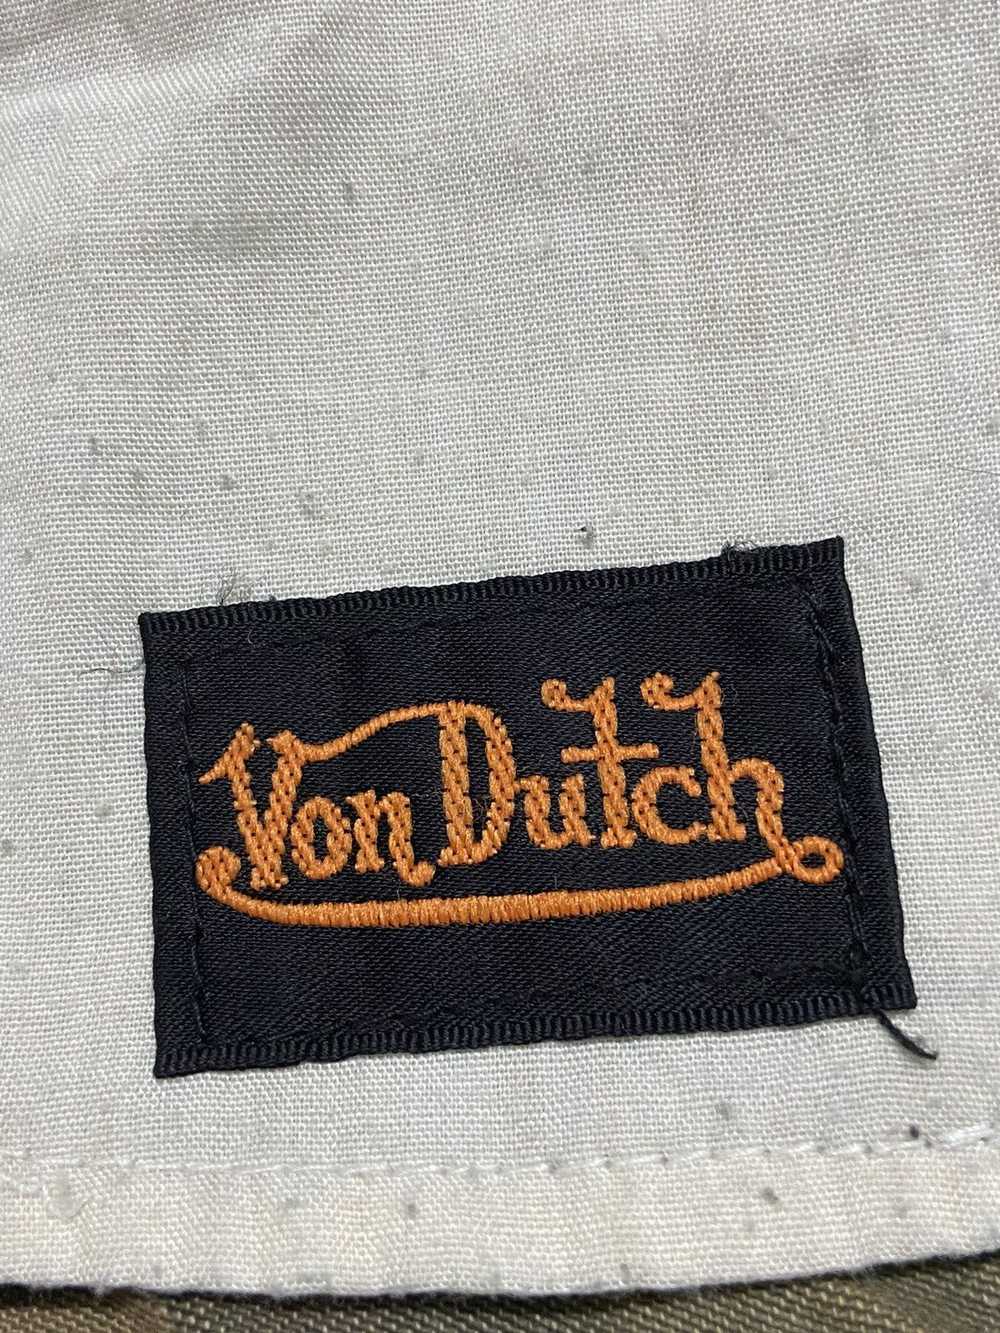 Von Dutch Von Dutch Jeans Camo Mini Skirts - image 3